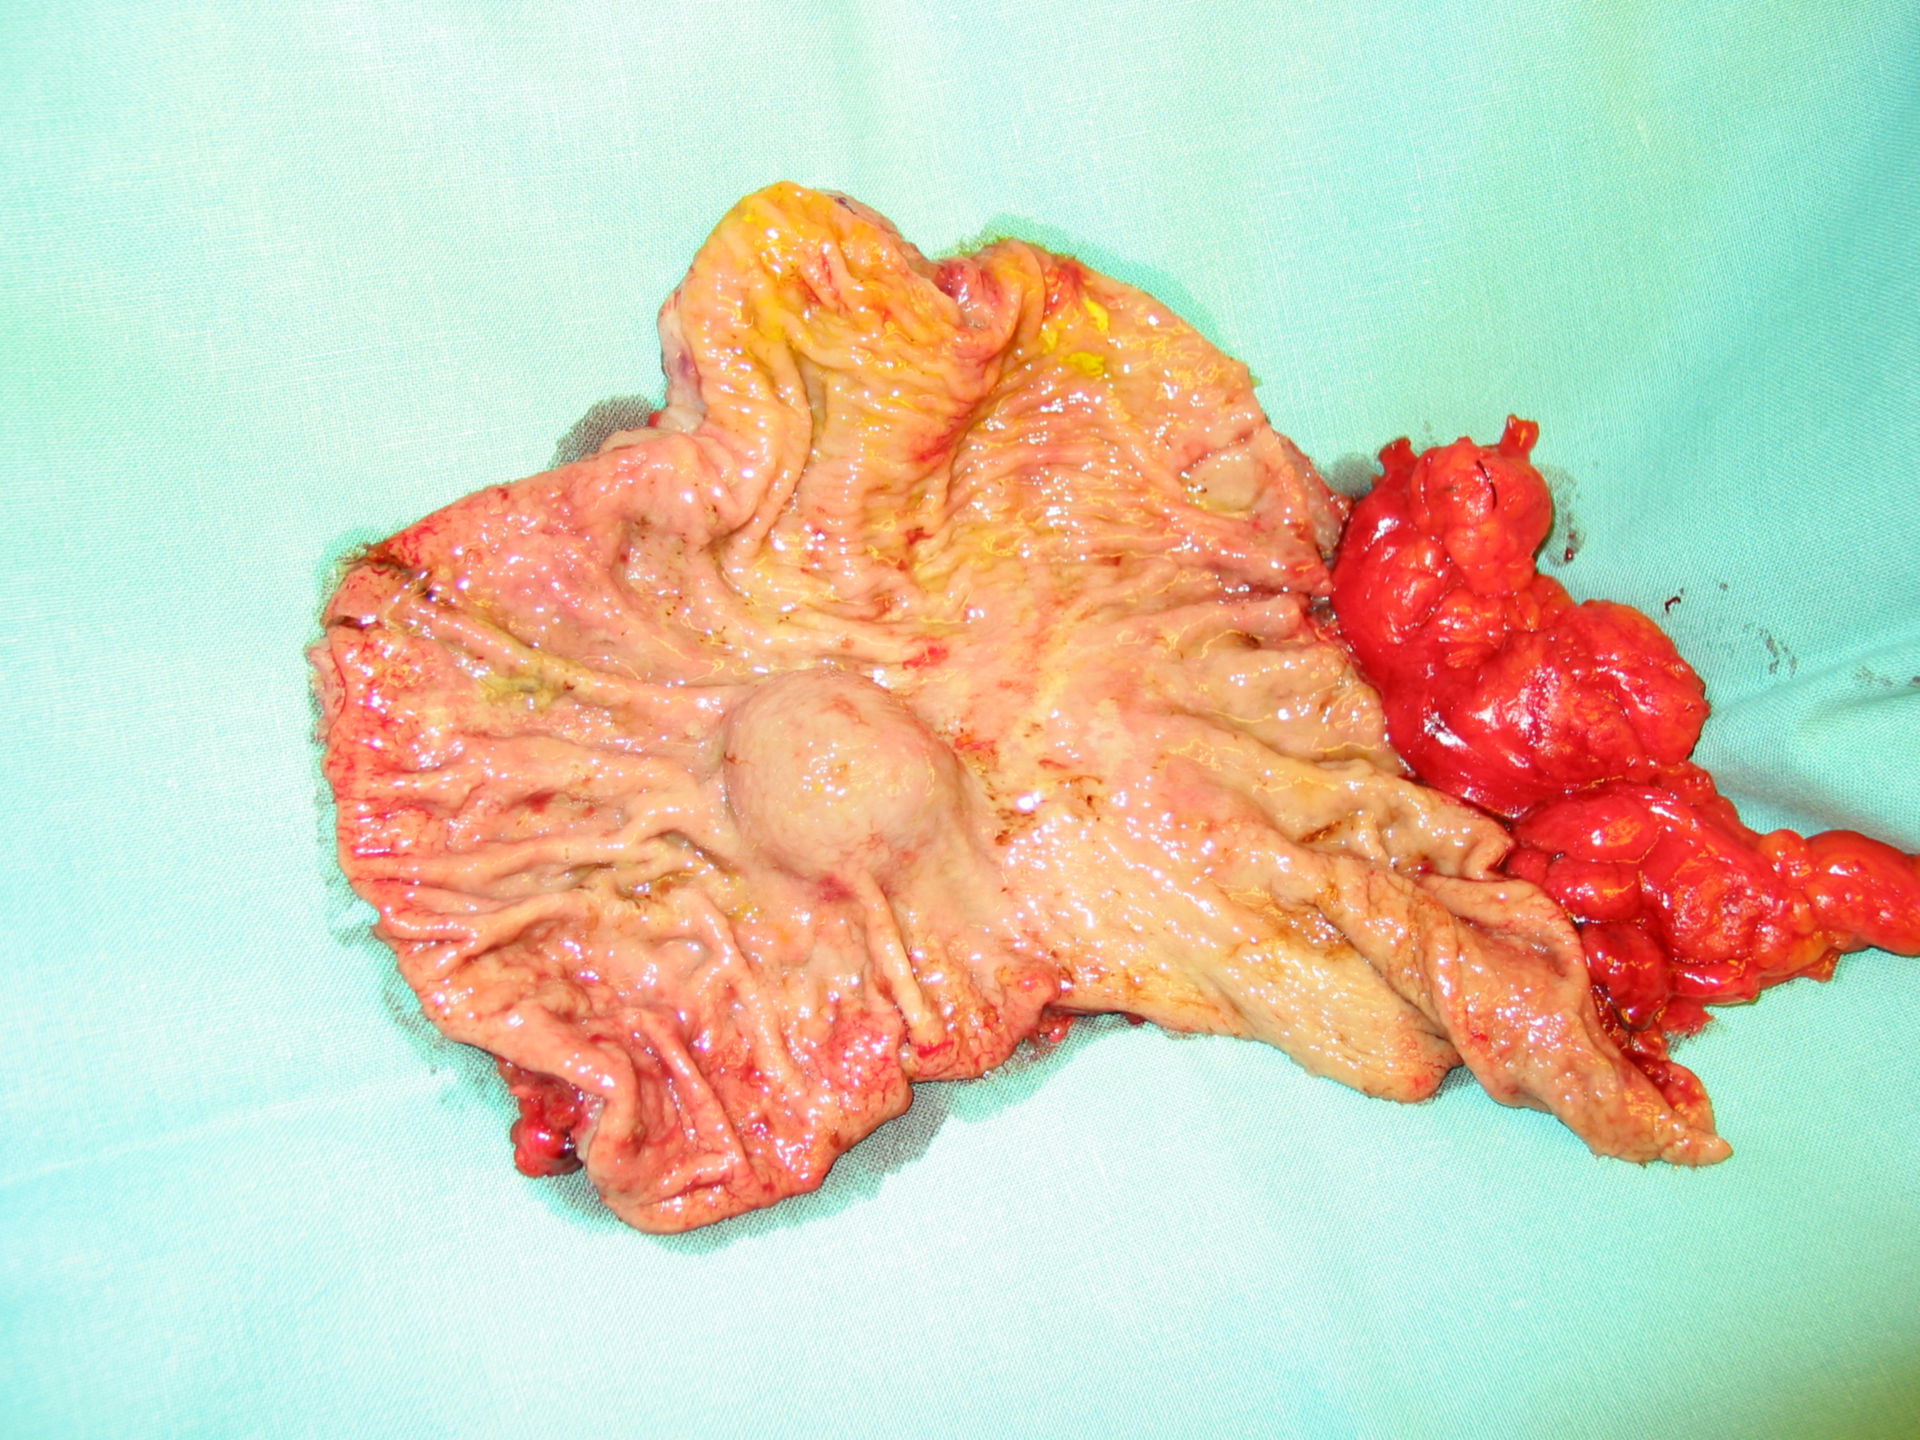 gastrointestinal stromal tumor (GIST)